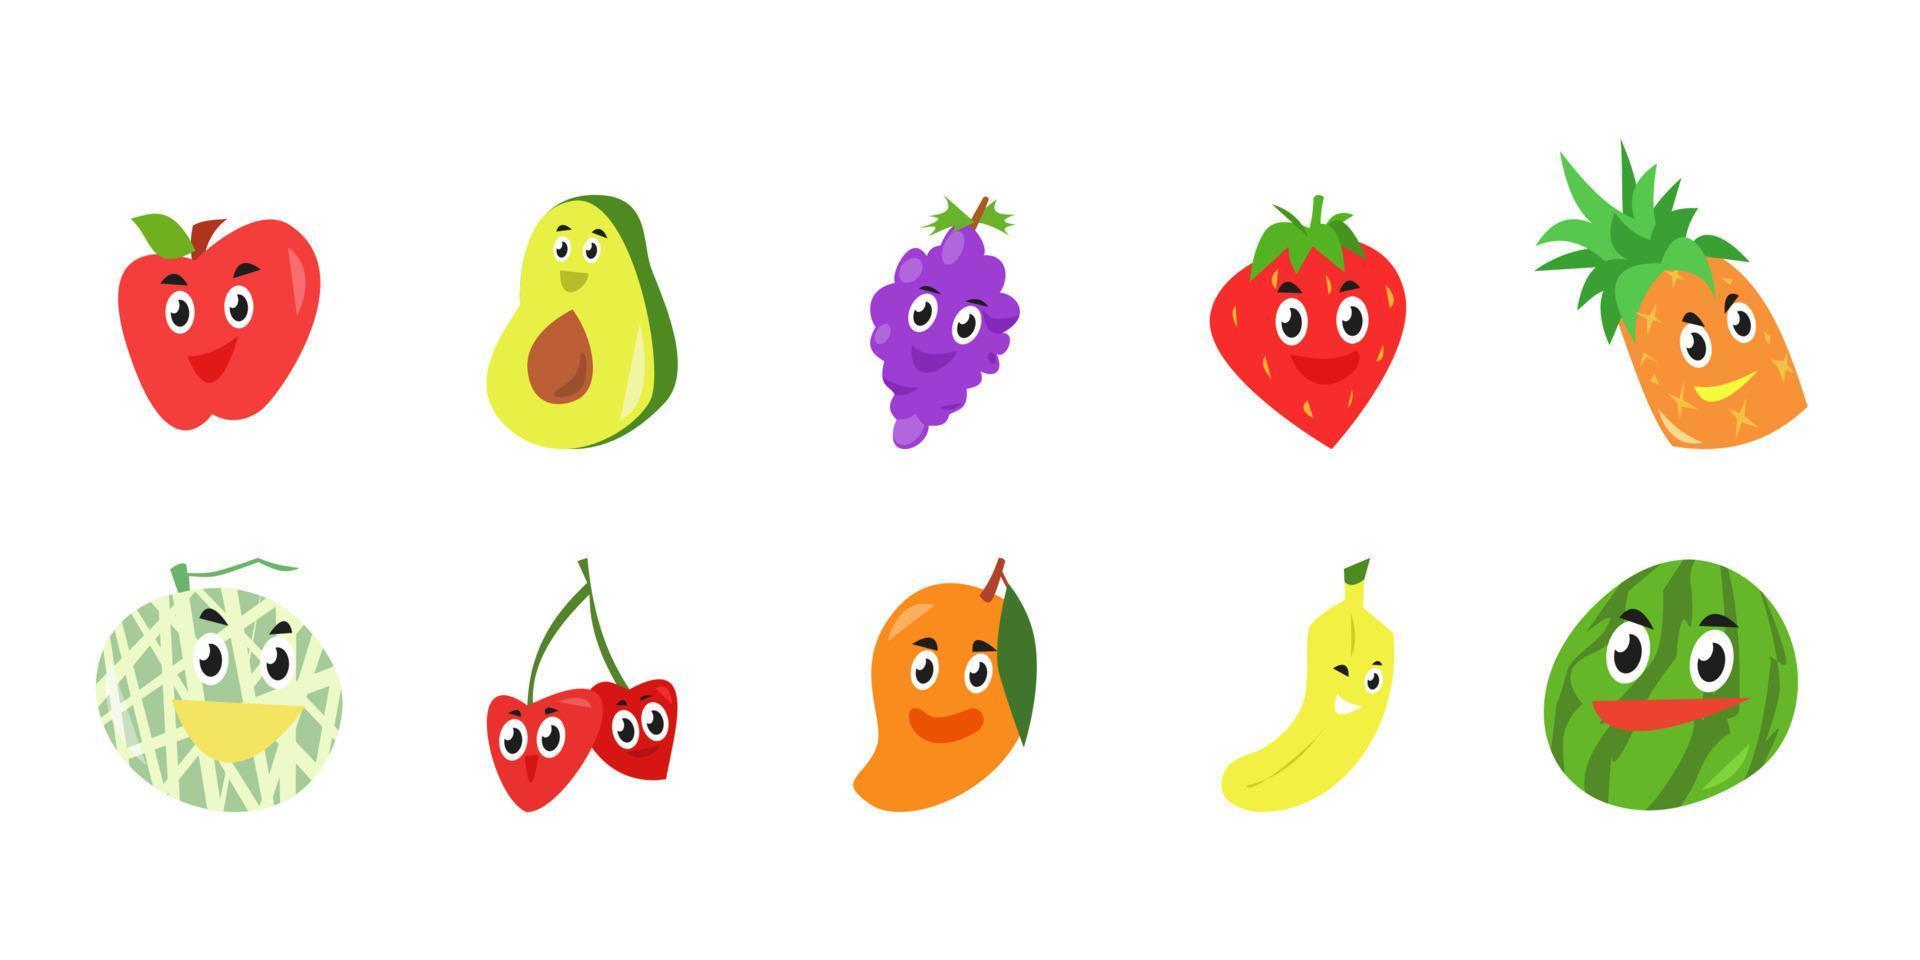 definir a coleção de ícones de personagens de frutas fofas. estilo de desenho vetorial. fundo branco. conceito de fruta, comida, adequado para ilustração de livros infantis, modelo, padrão, mascote, adesivo, etc. vetor